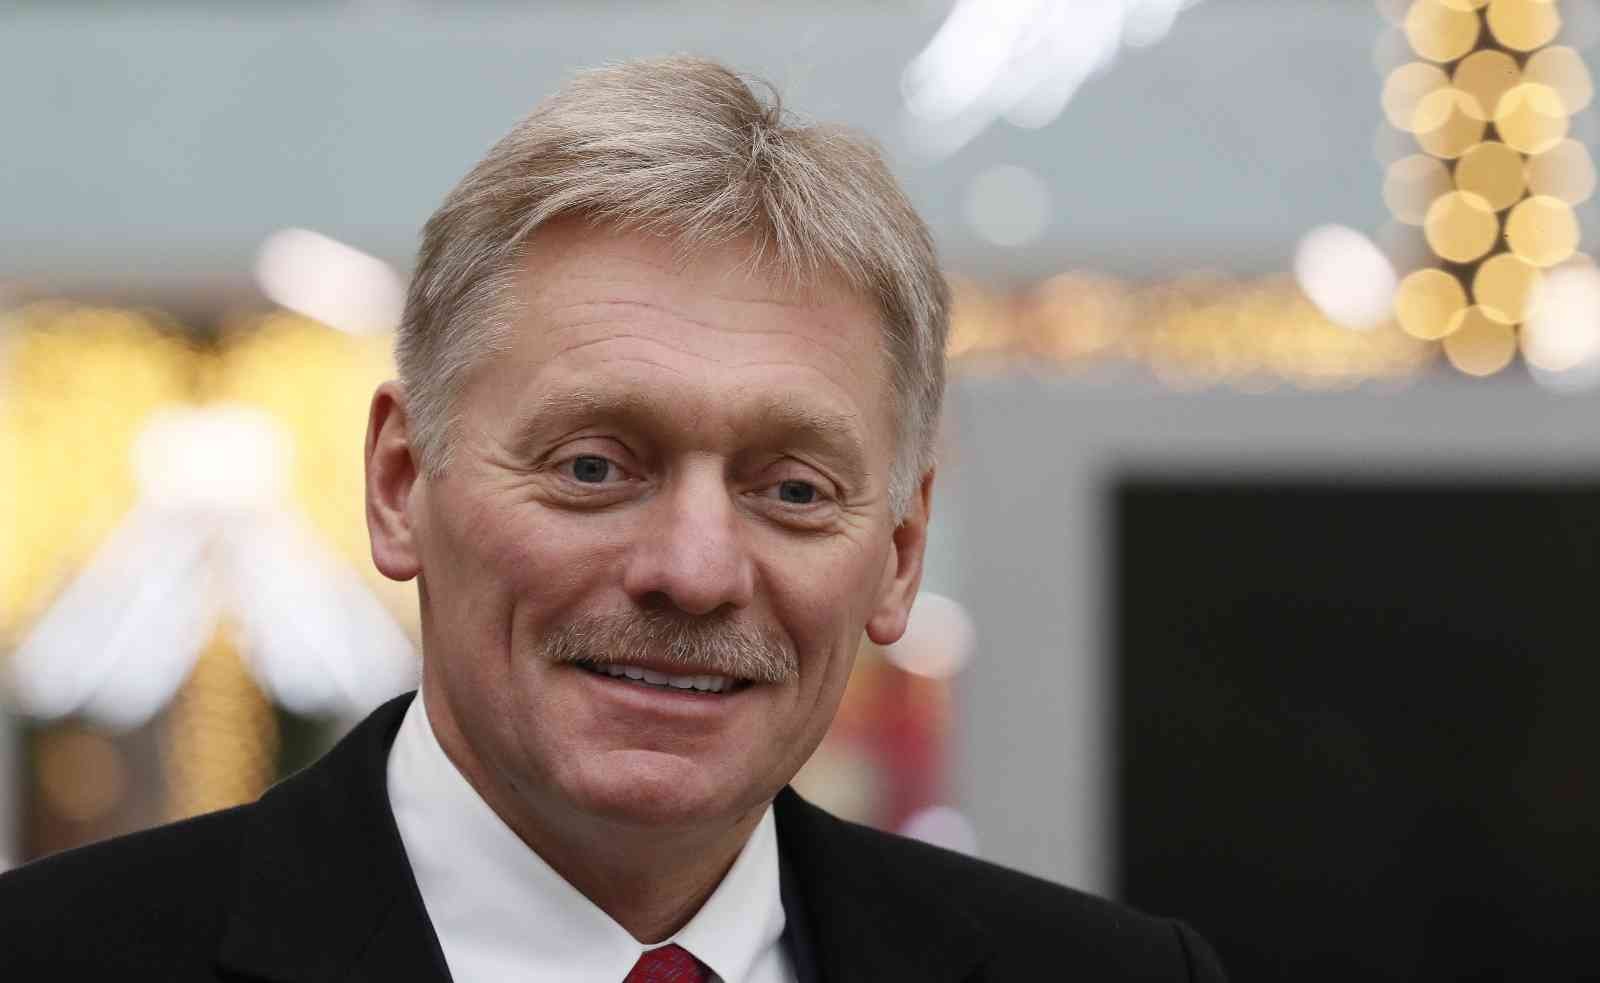 Kremlin Sözcüsü Peskov: “türkiye Çıkarlarına Göre Hareket Ediyor Ve Gerektiği Yerde Açıkça ‘evet’ Ya Da ‘hayır’ Diyebiliyor”